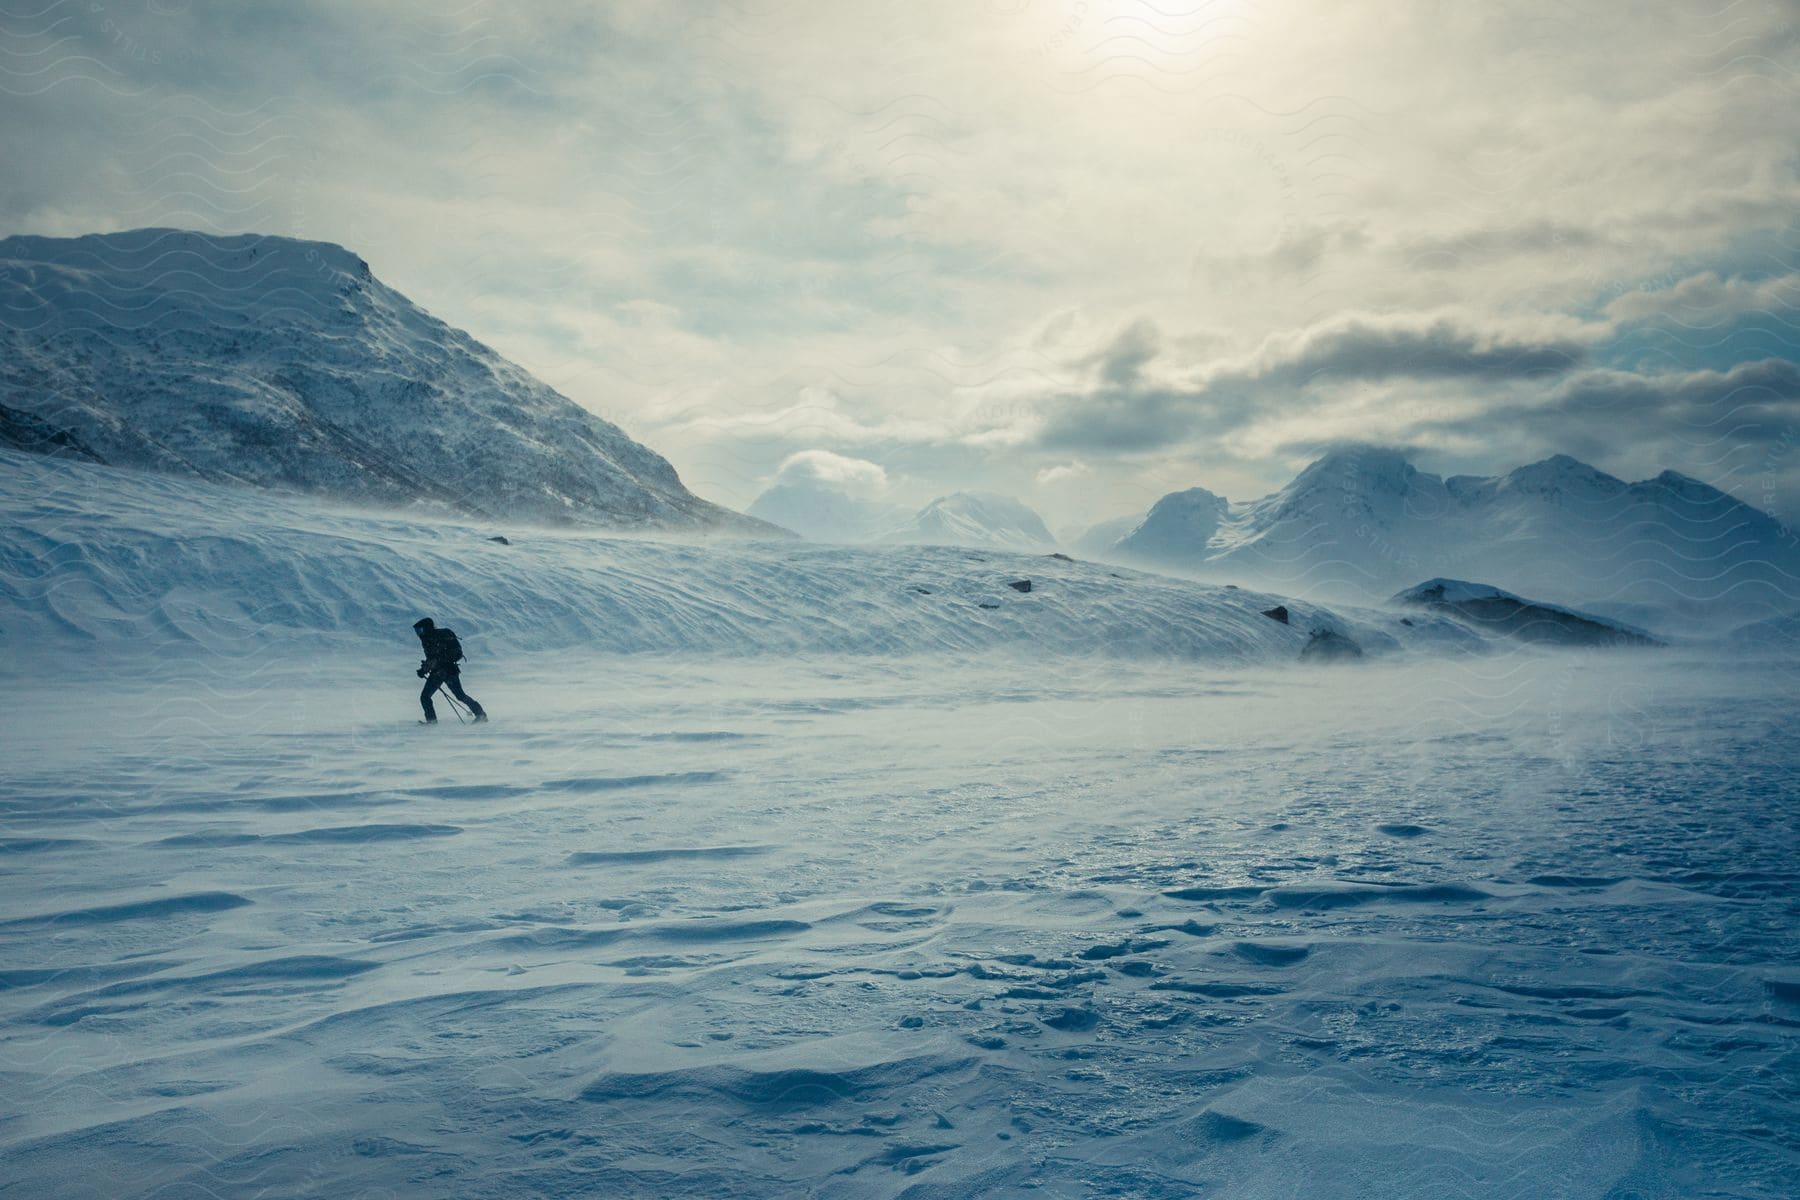 An explorer explores the snowy mountains.